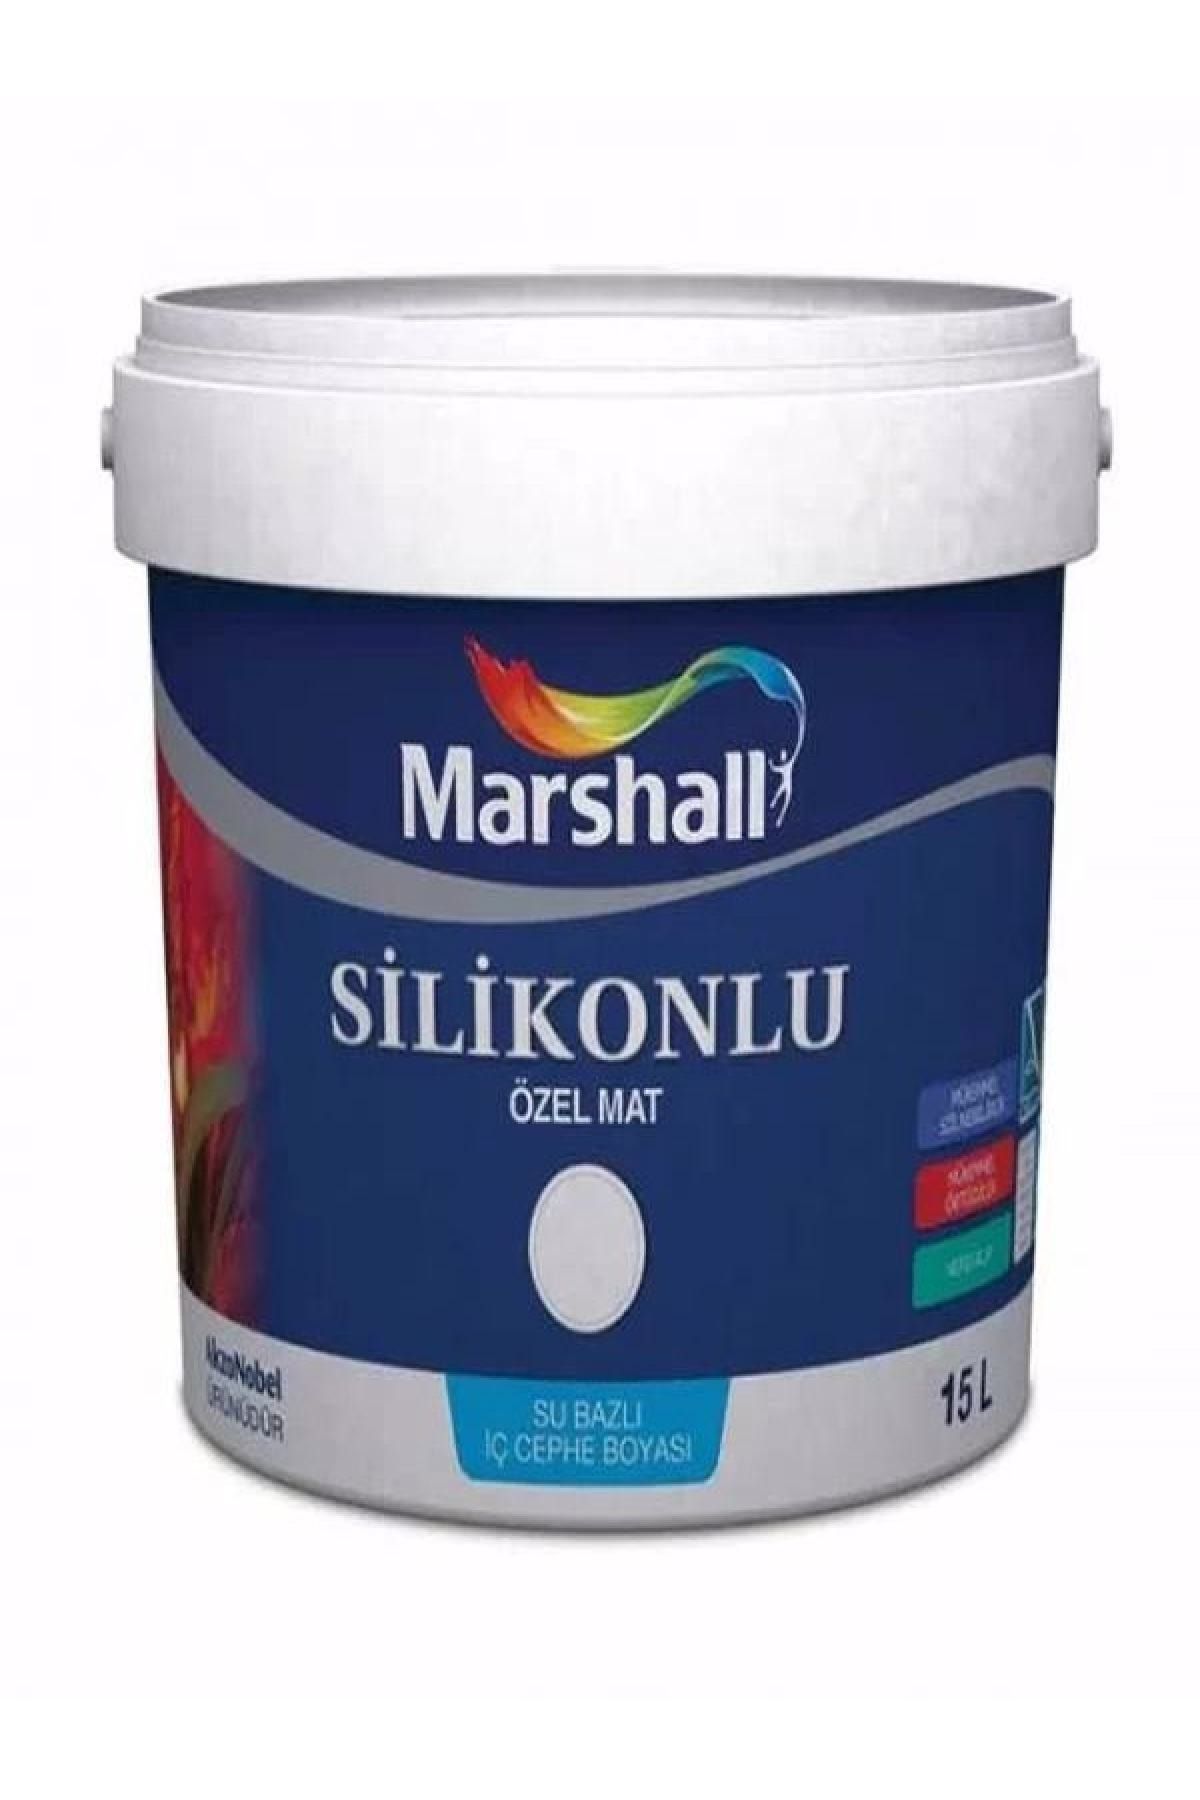 Marshall Silikonlu Özel Mat Tütsü 15 Lt (20 Kg)